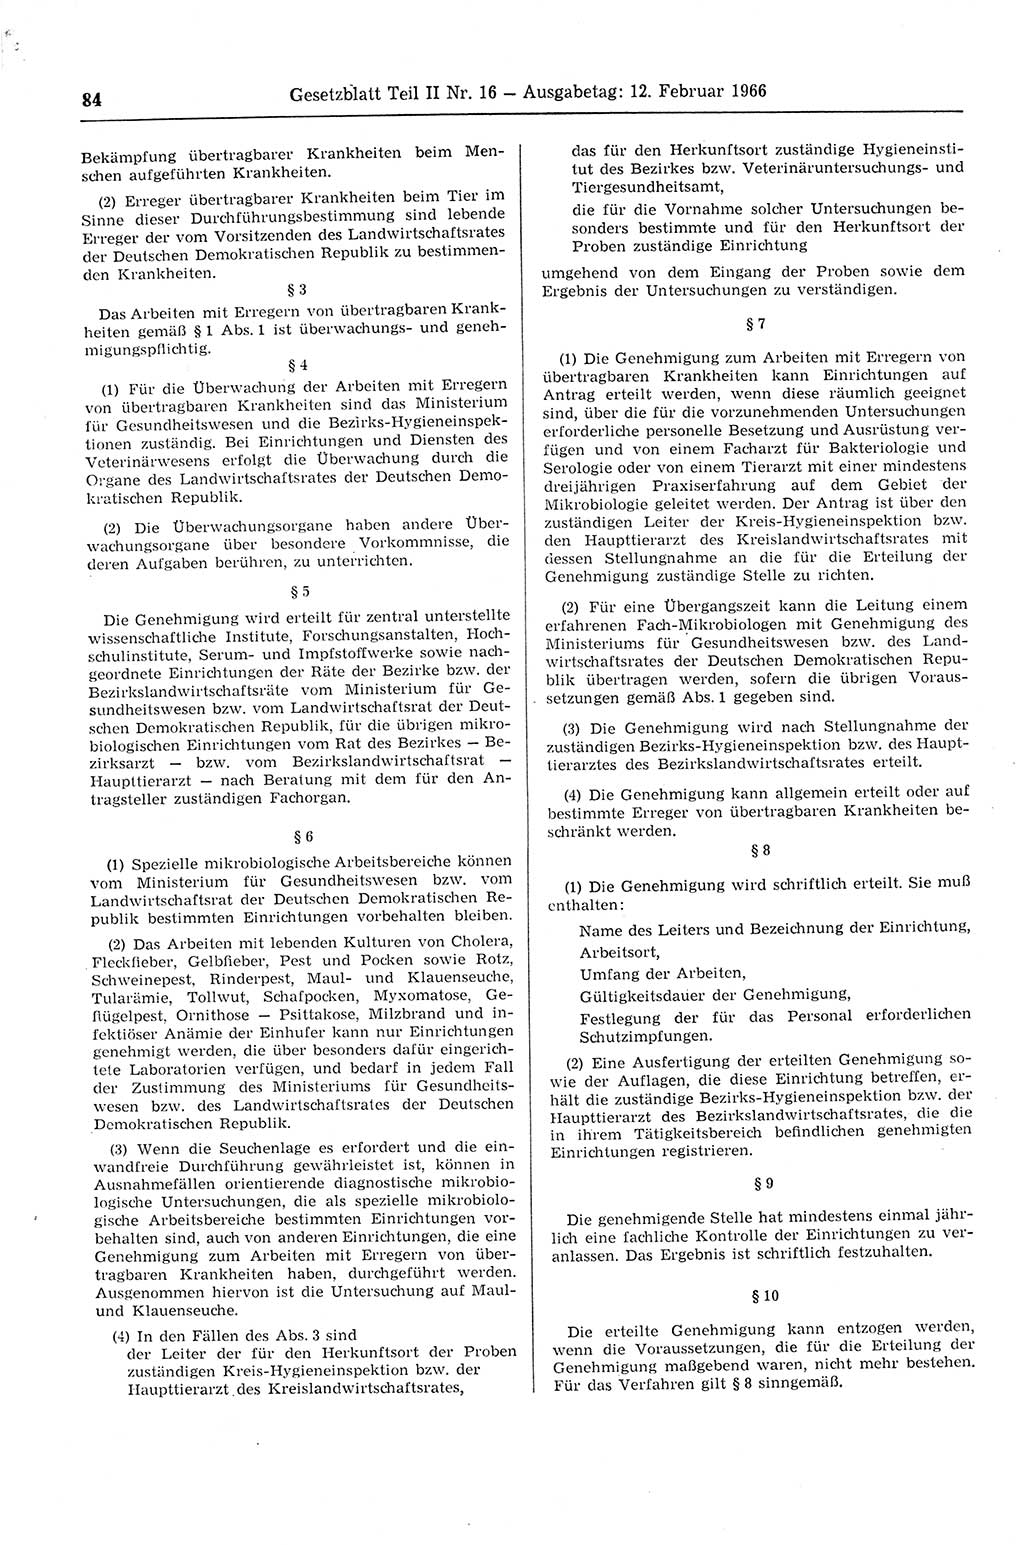 Gesetzblatt (GBl.) der Deutschen Demokratischen Republik (DDR) Teil ⅠⅠ 1966, Seite 84 (GBl. DDR ⅠⅠ 1966, S. 84)